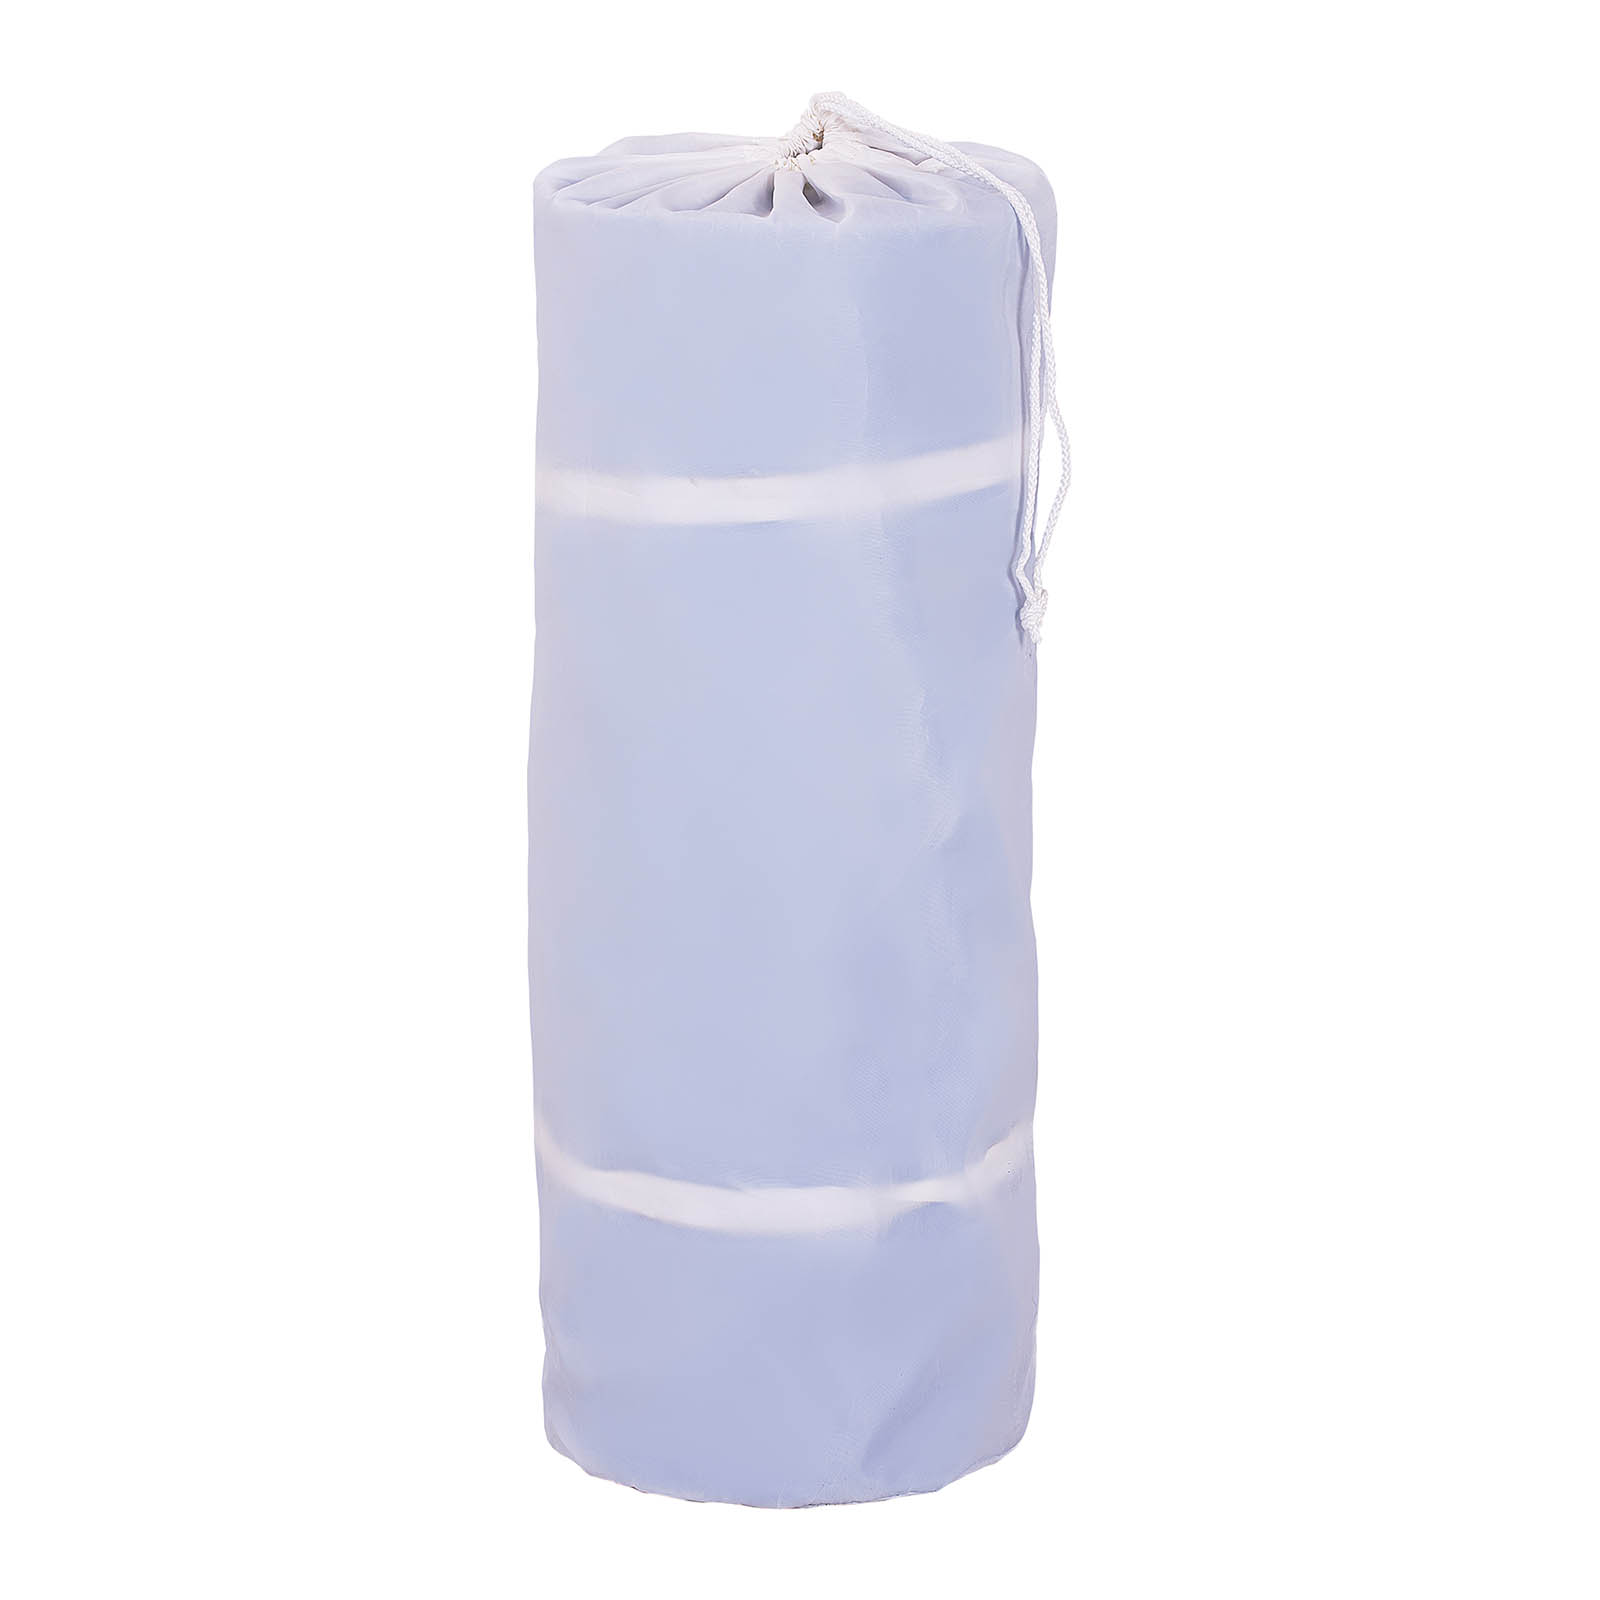 Felfújható tornaszőnyeg készlet pumpával - 300 x 200 x 20 cm - 300 kg - kék/fehér